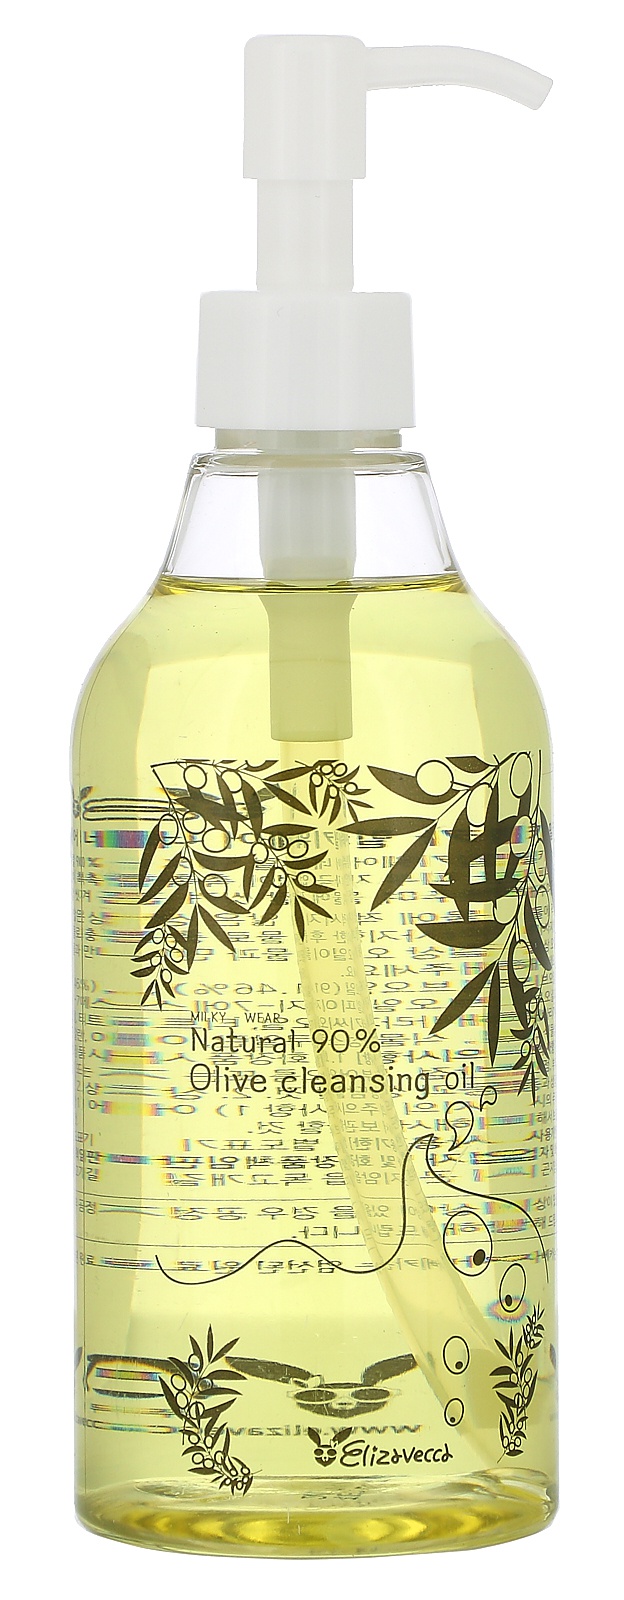 Elizavecca Milky-wear, Natural 90% Olive Cleansing Oil